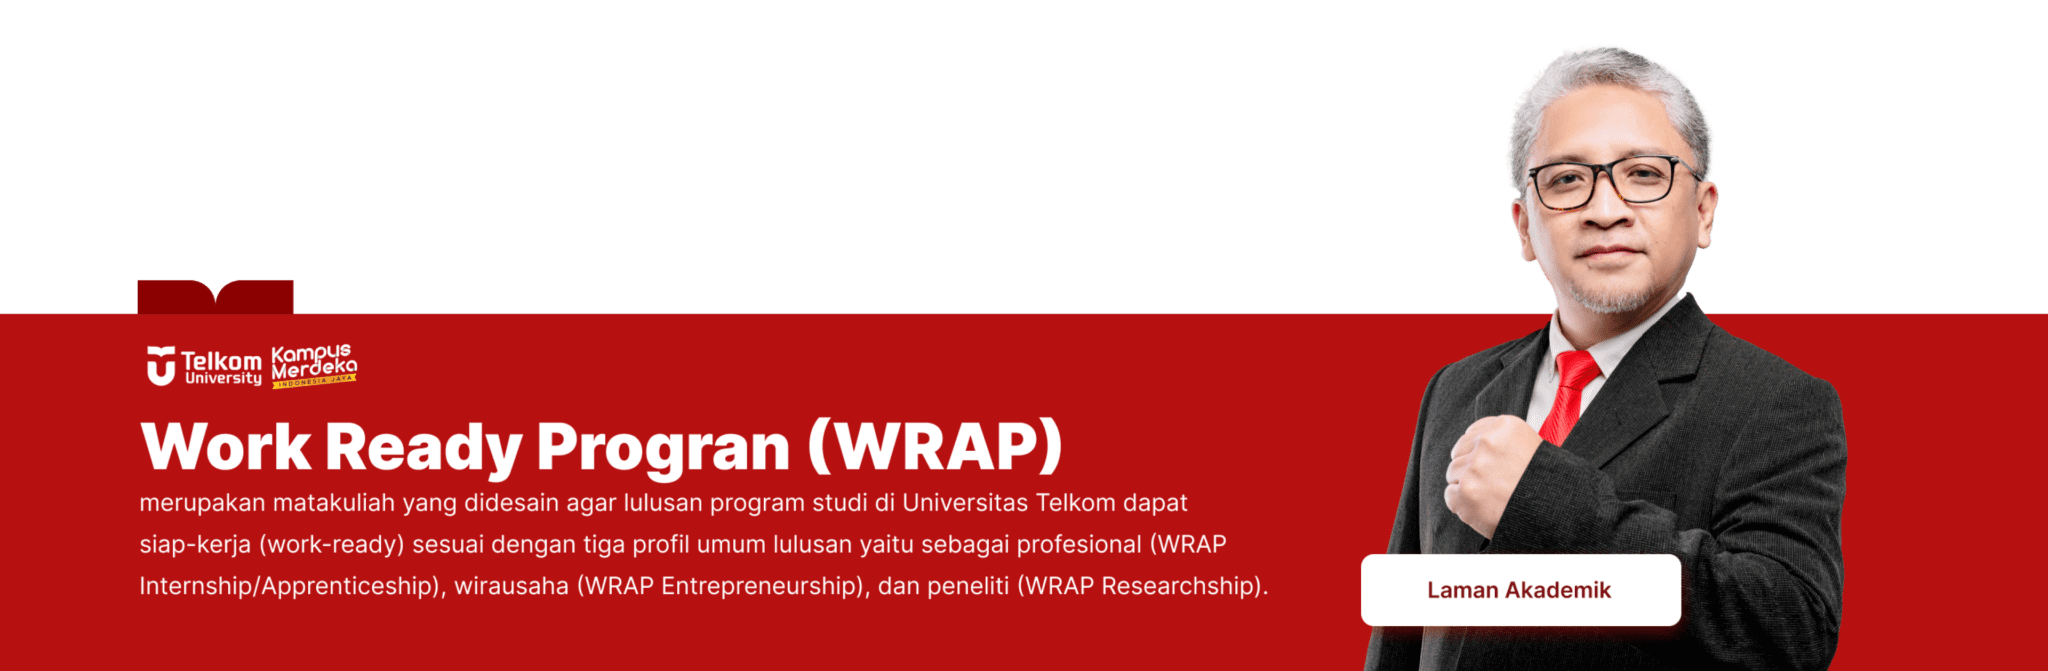 Work Ready Program (WRAP)